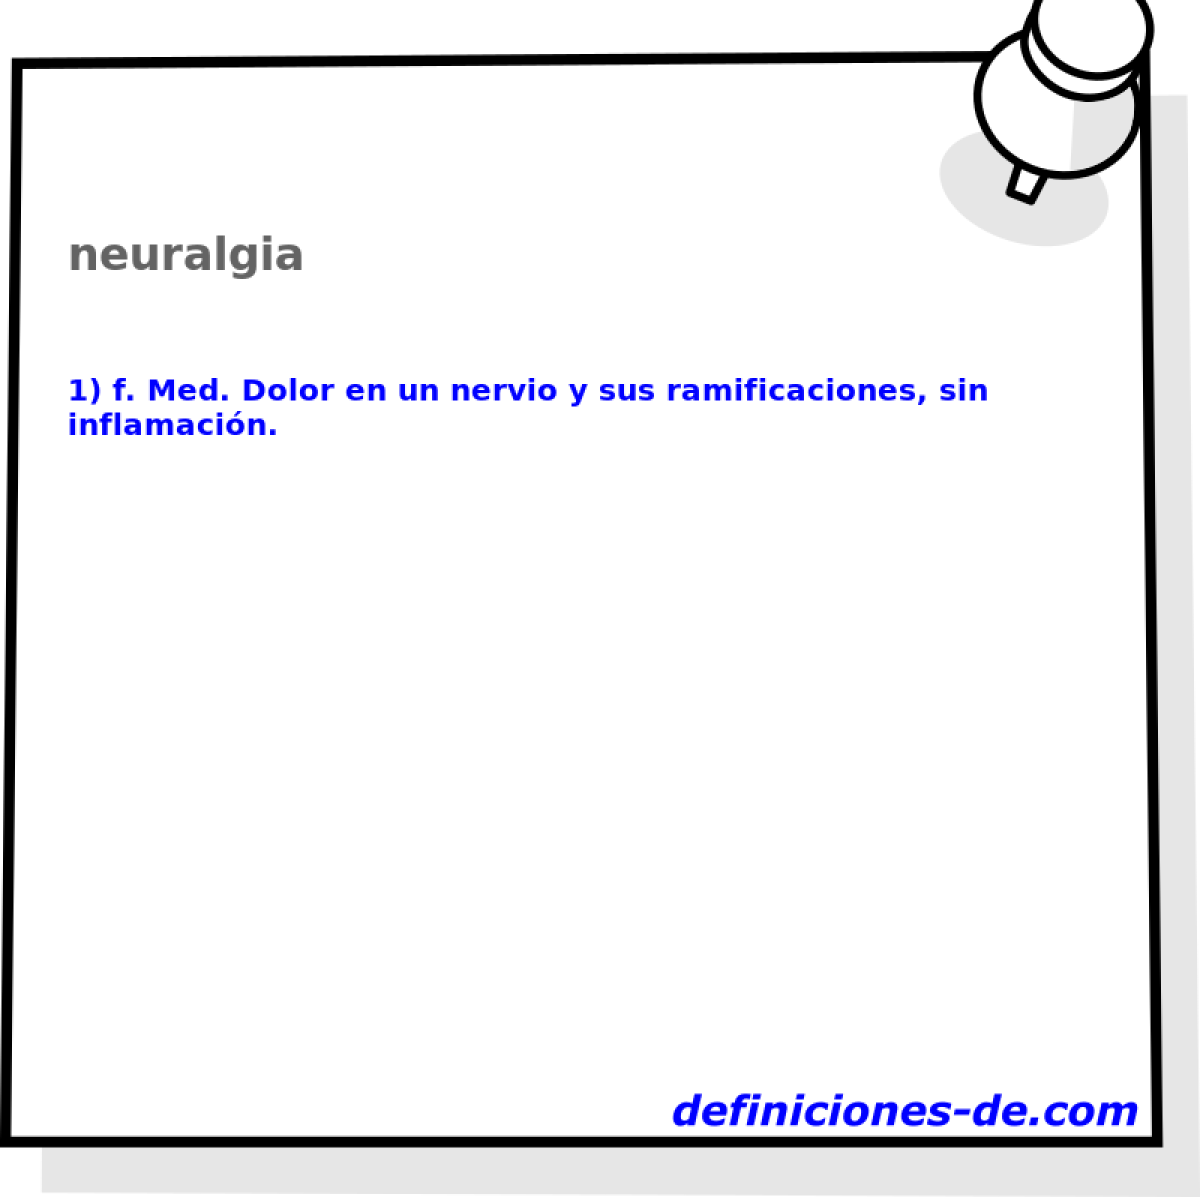 neuralgia 